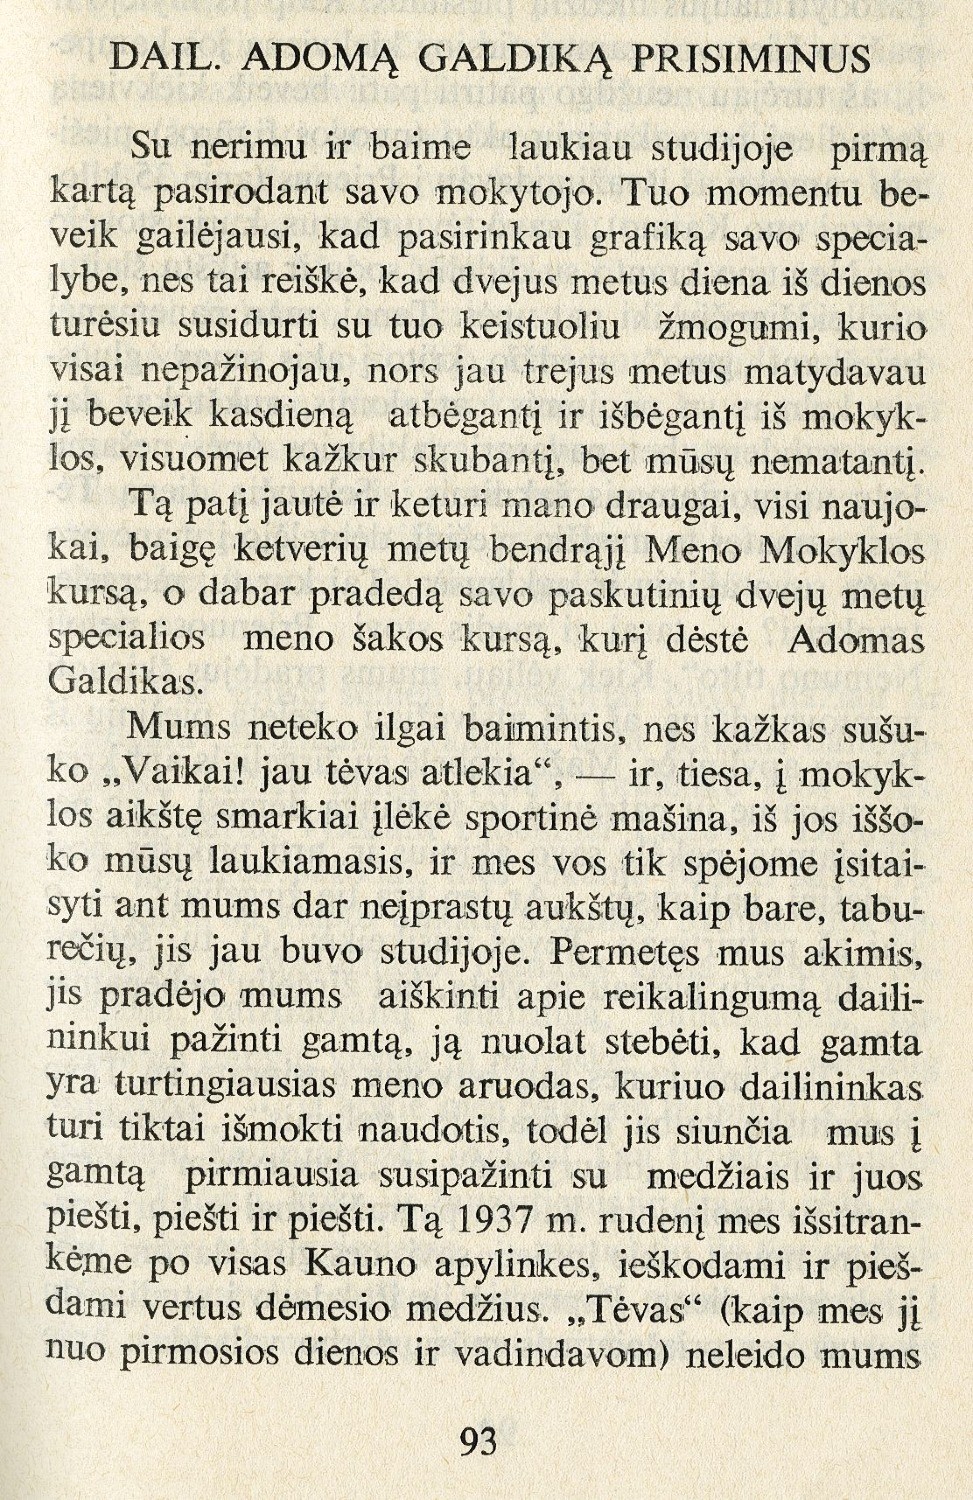 18-1937-dail-adoma-galdika-prisiminus-vilkutaityte-gedviliene-mintis-1972-nr2-p93-2800-2000-100